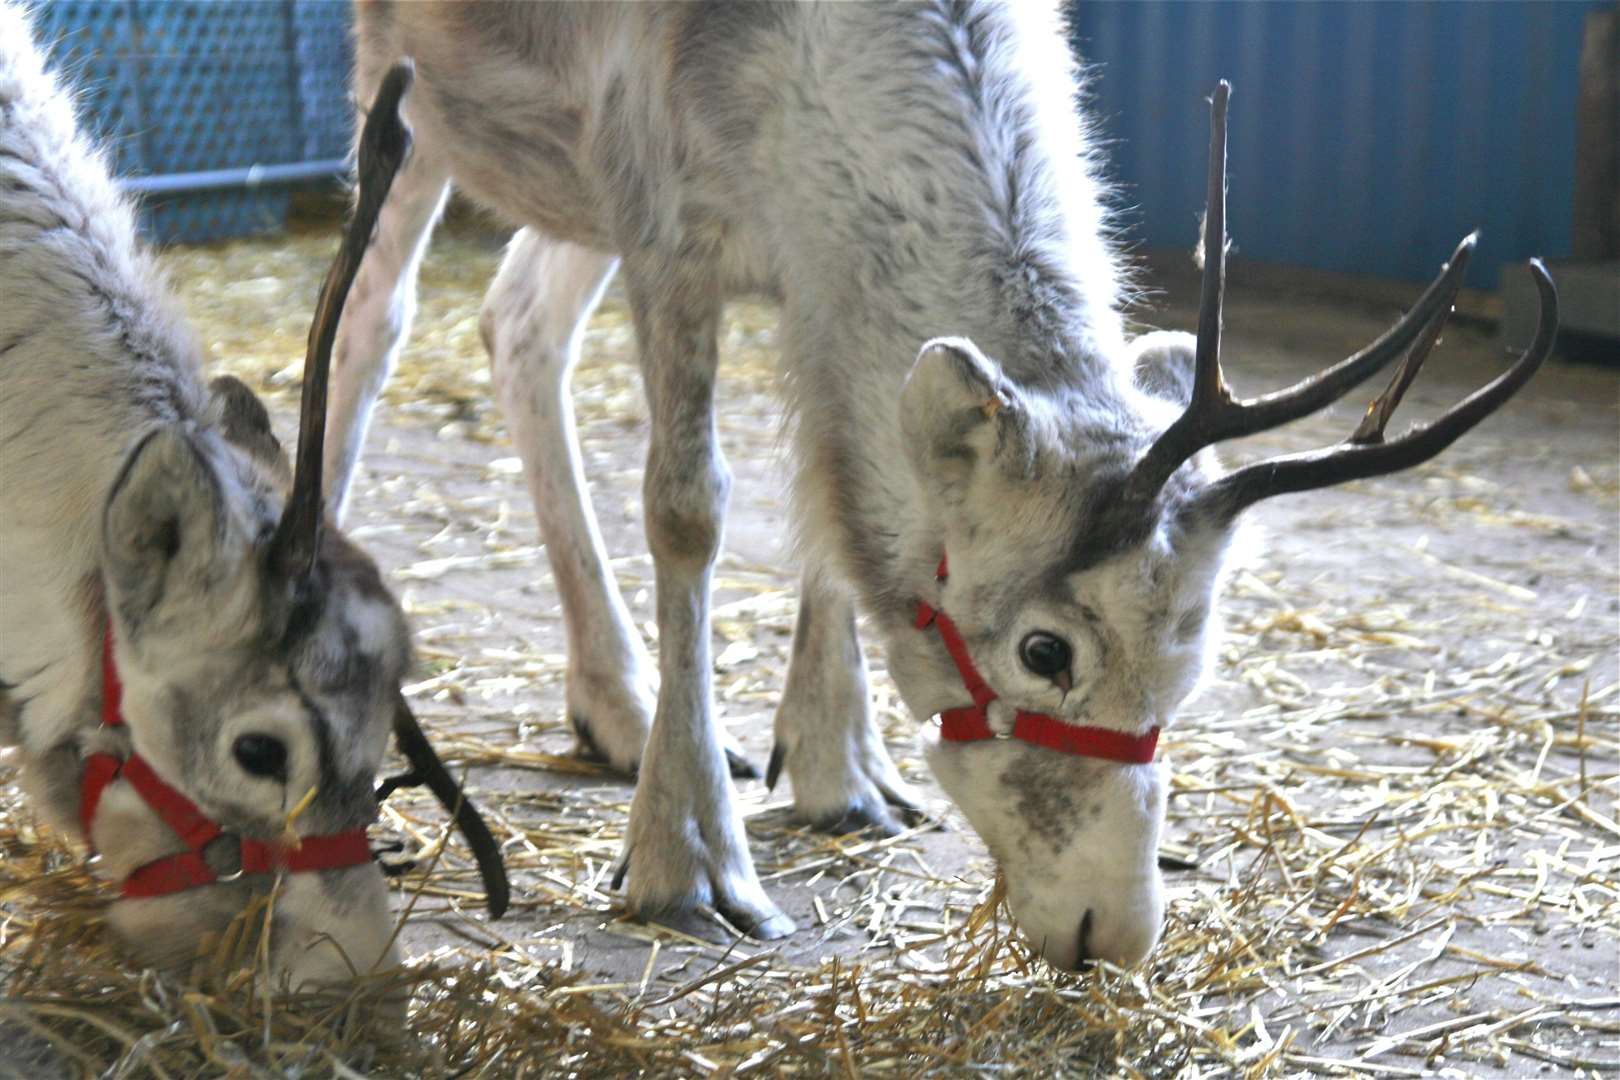 Reindeer at Hawley Garden Centre in 2013